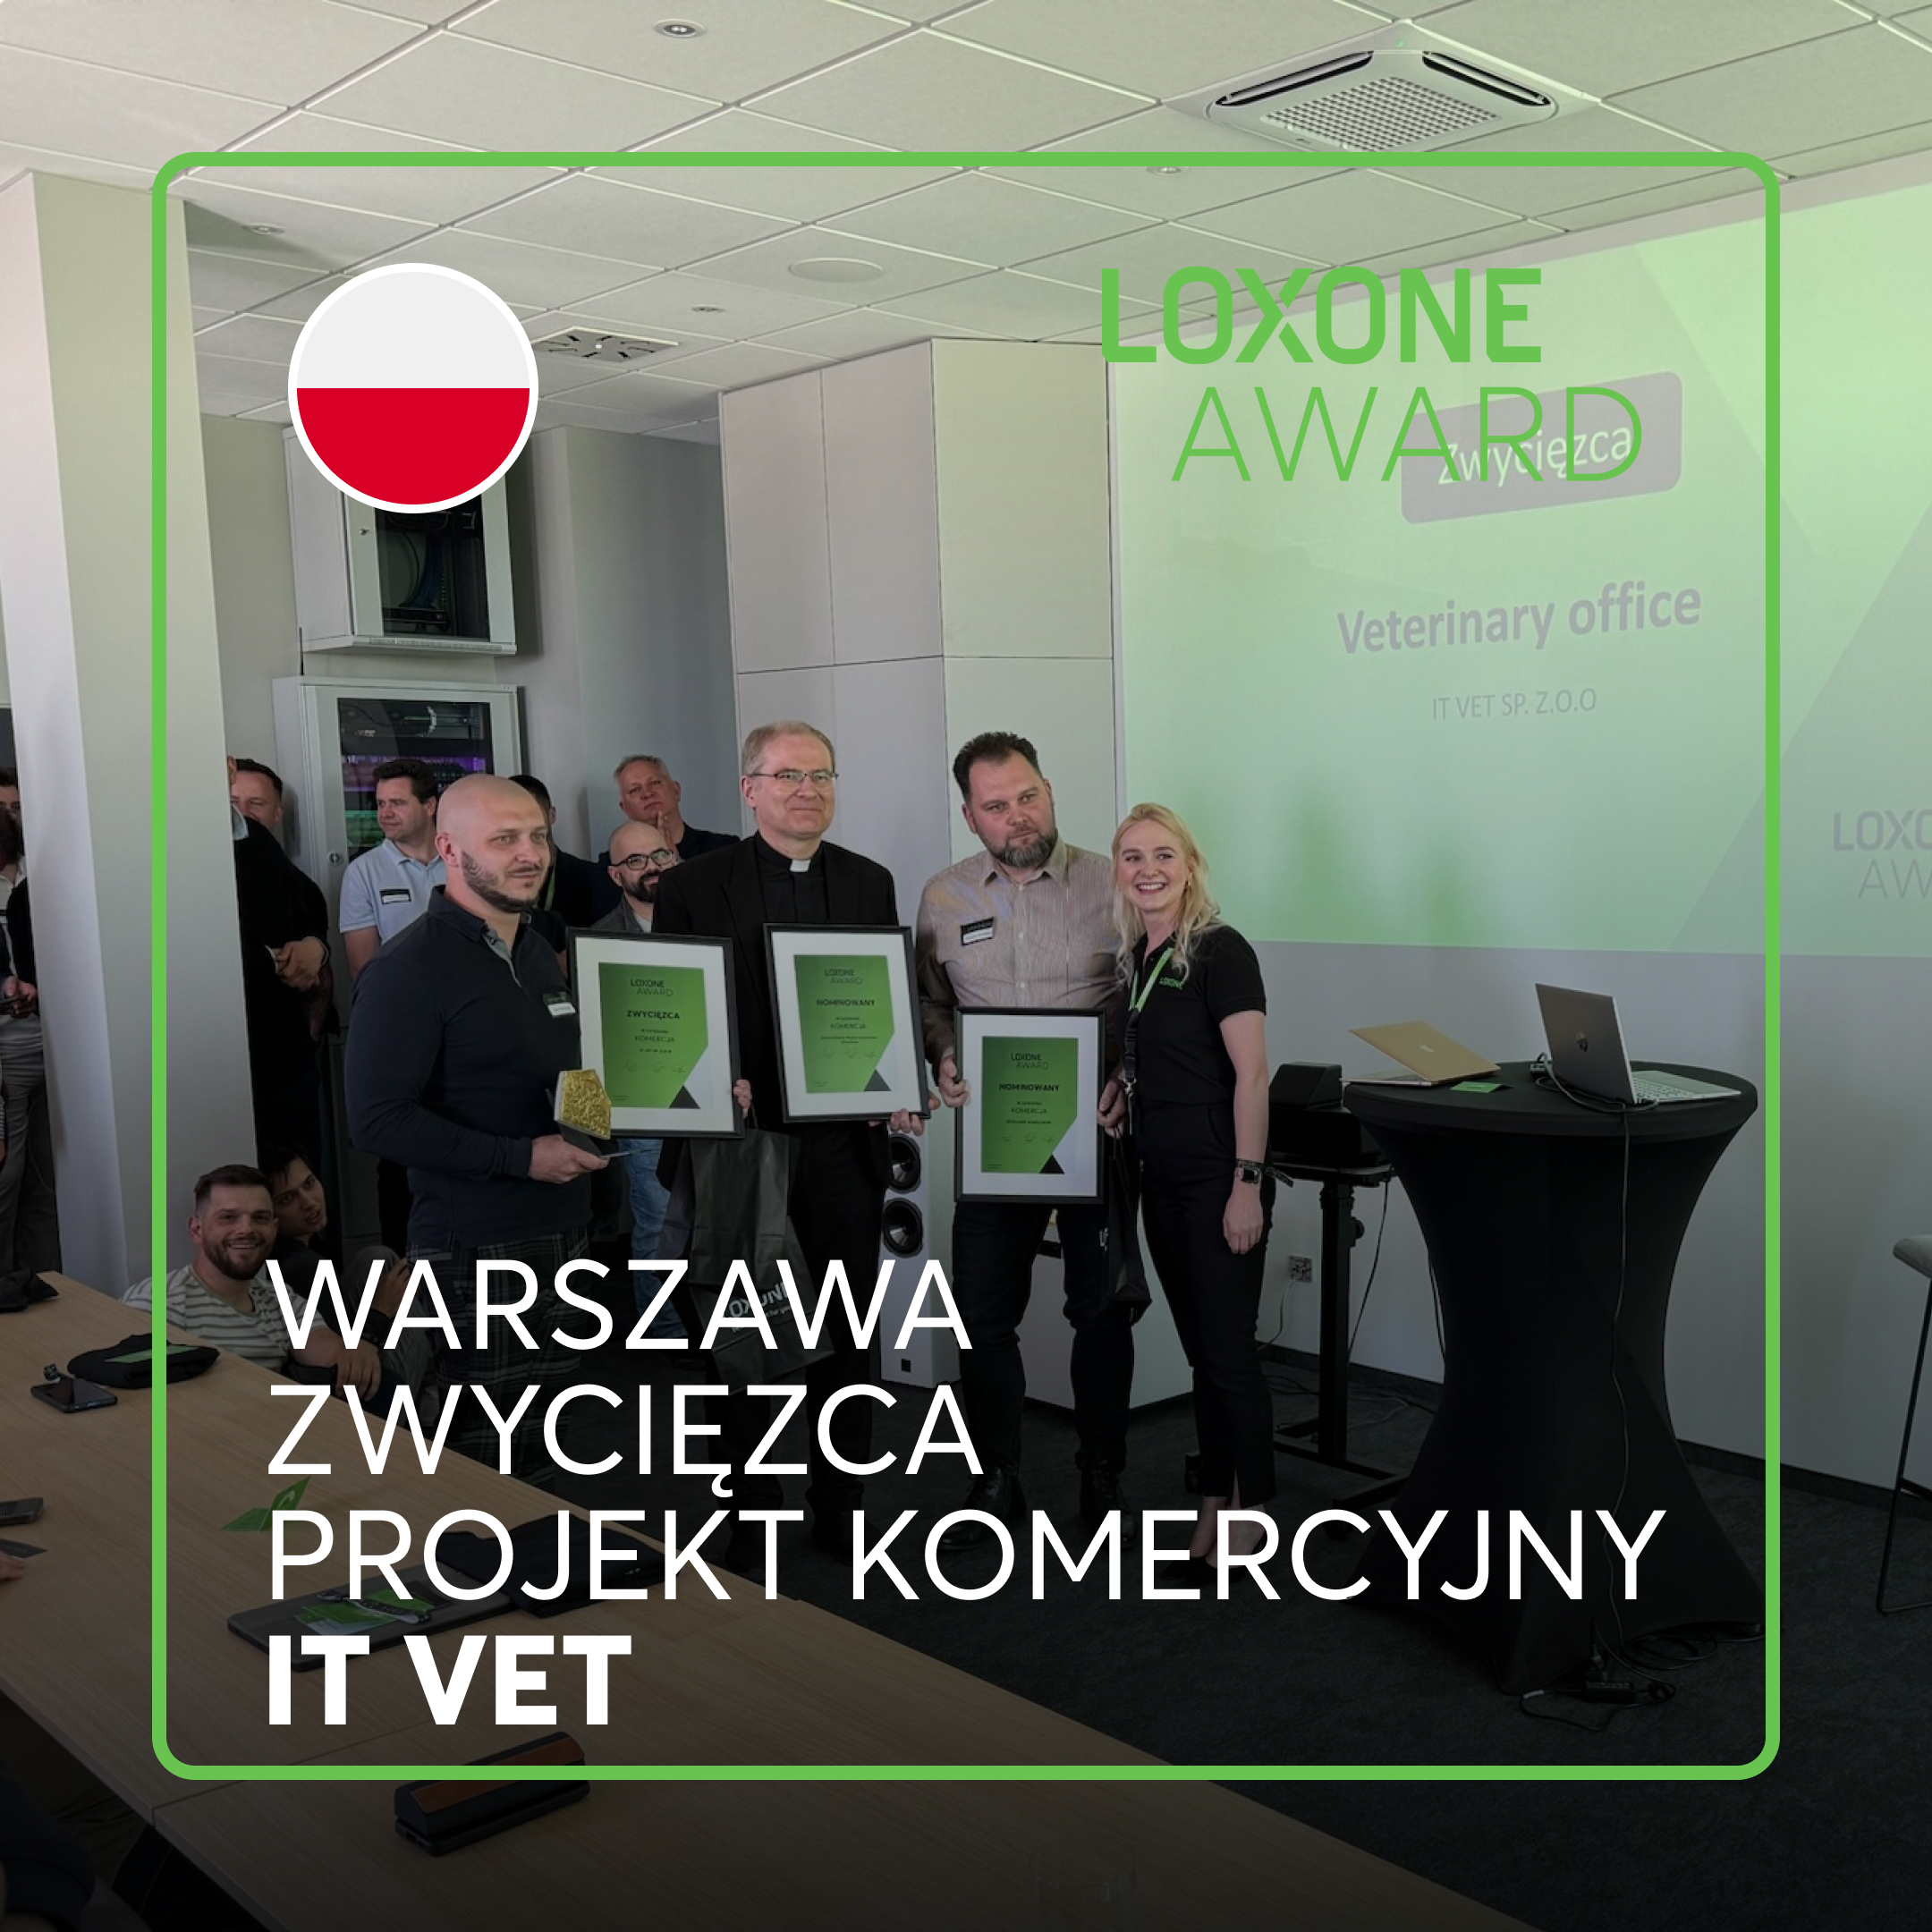 Zwycięzca z Warszawy w kategorii projekt komercyjny